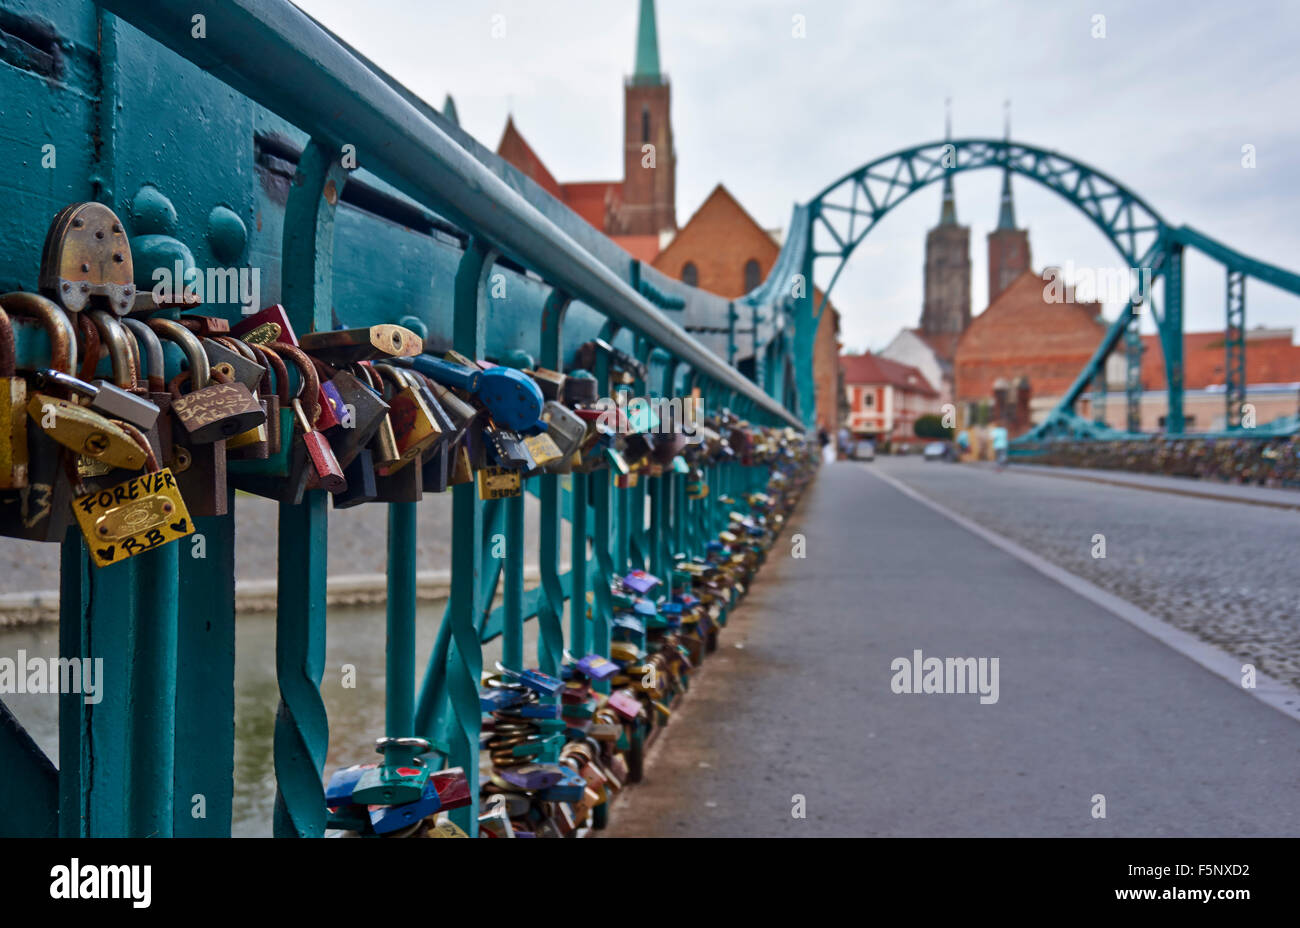 Cadenas à Pont Tumski, reliant l'île de Sable et de la vieille ville de Wroclaw avec l'île de la cathédrale ou Ostrow Tumski, Pologne Banque D'Images